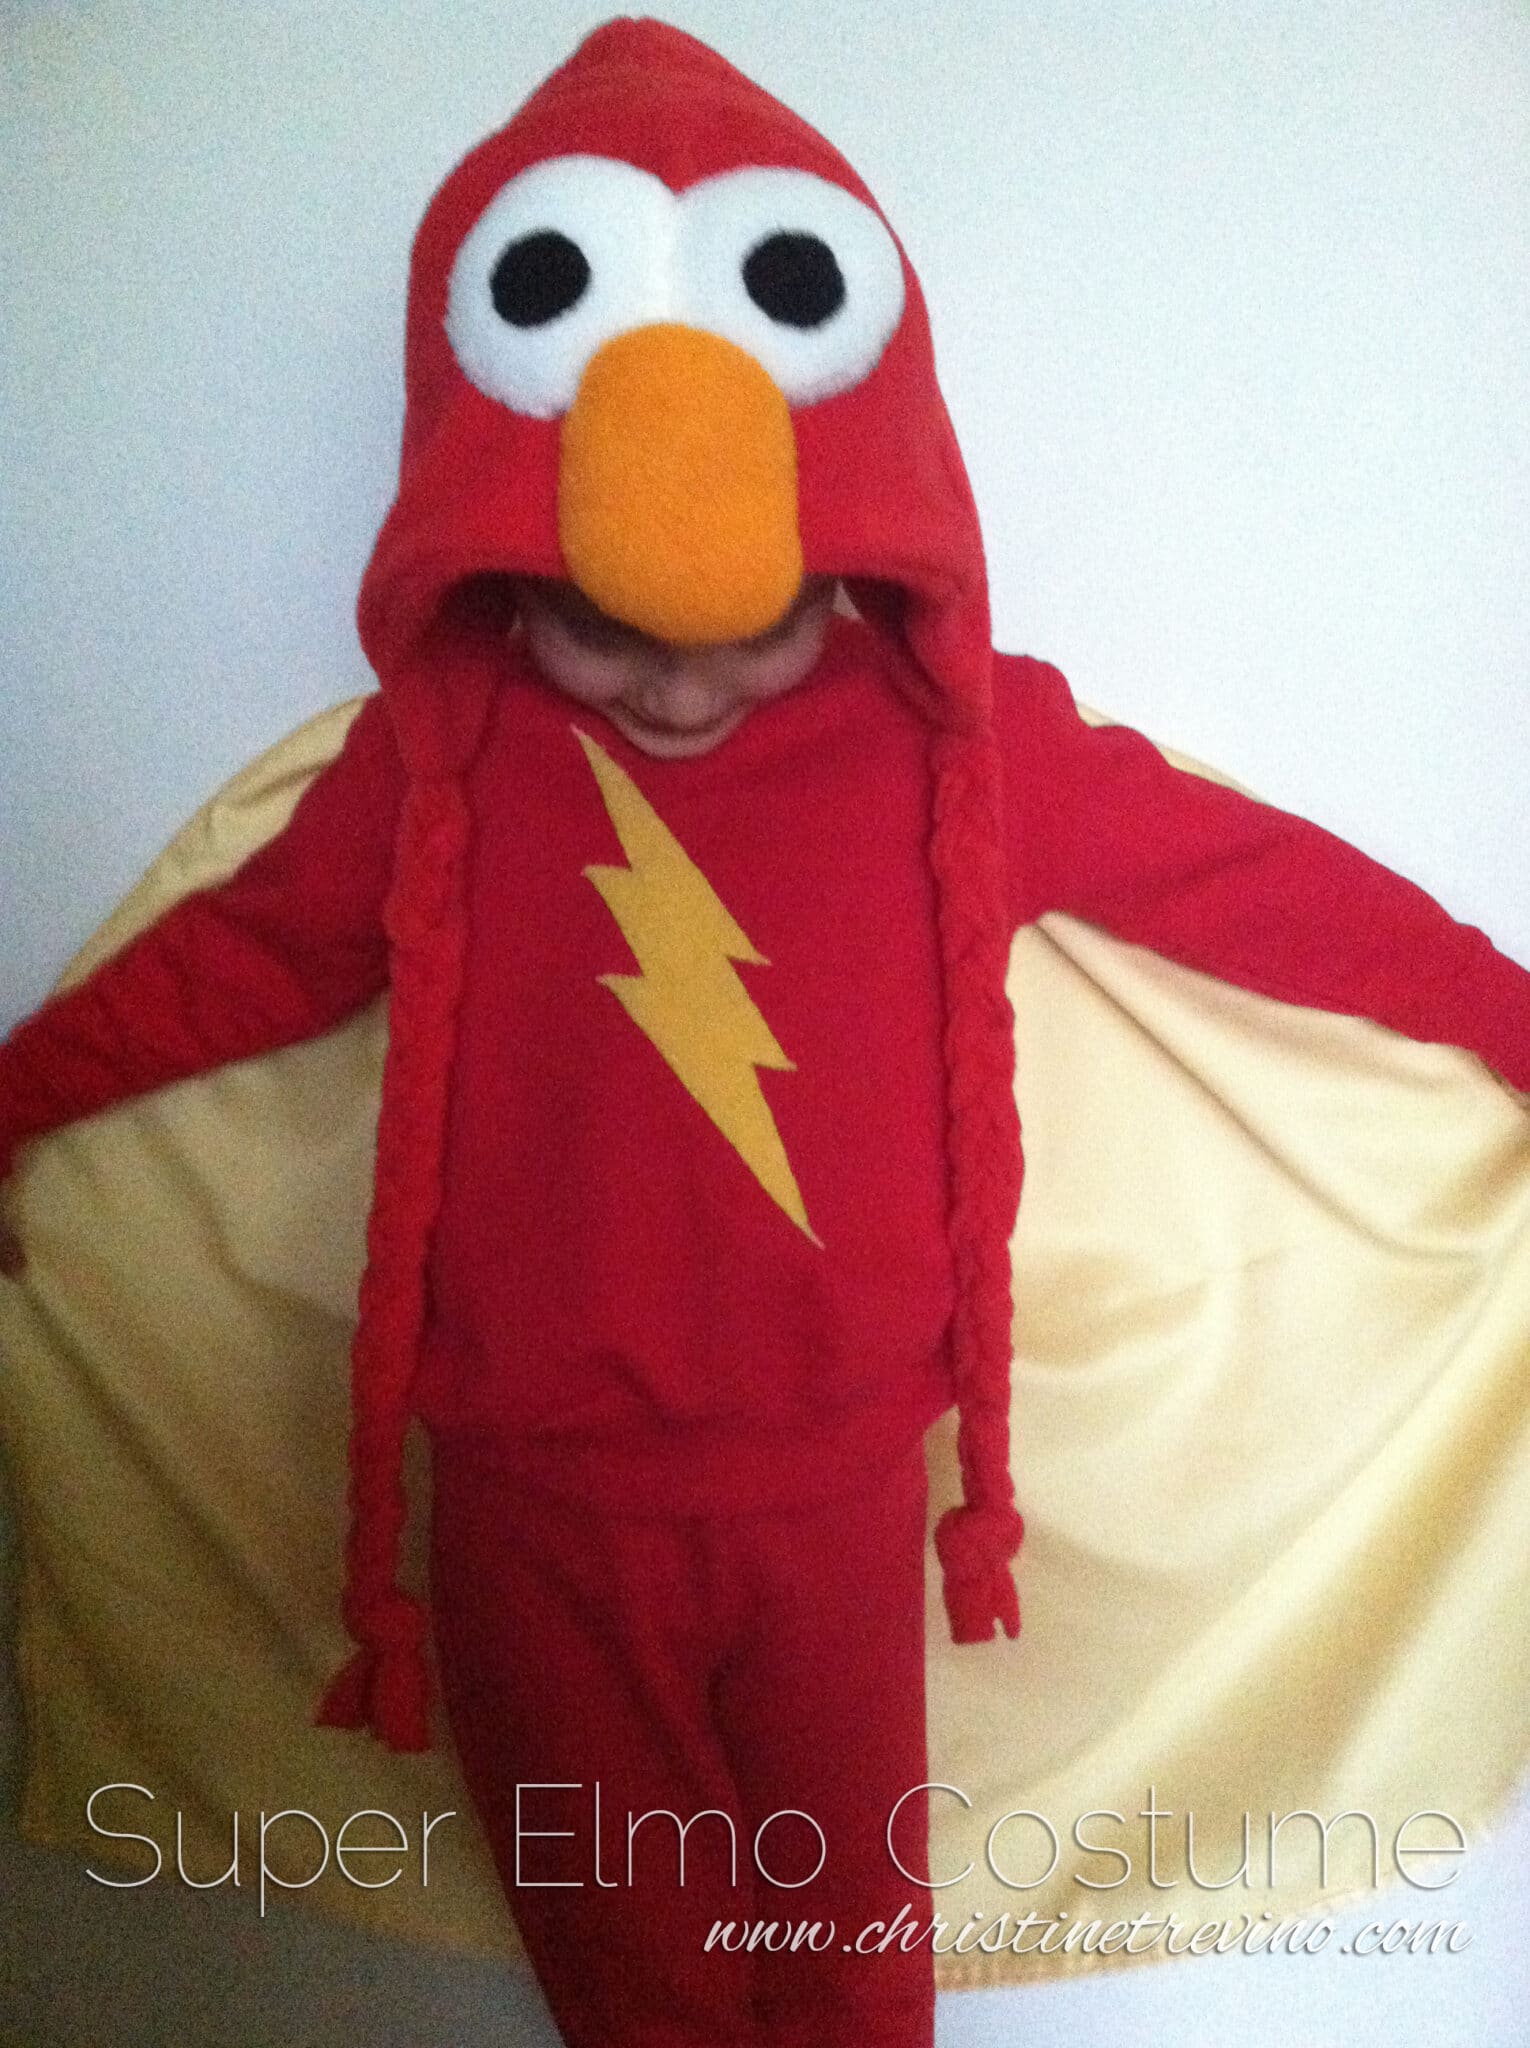 Super Elmo Costume